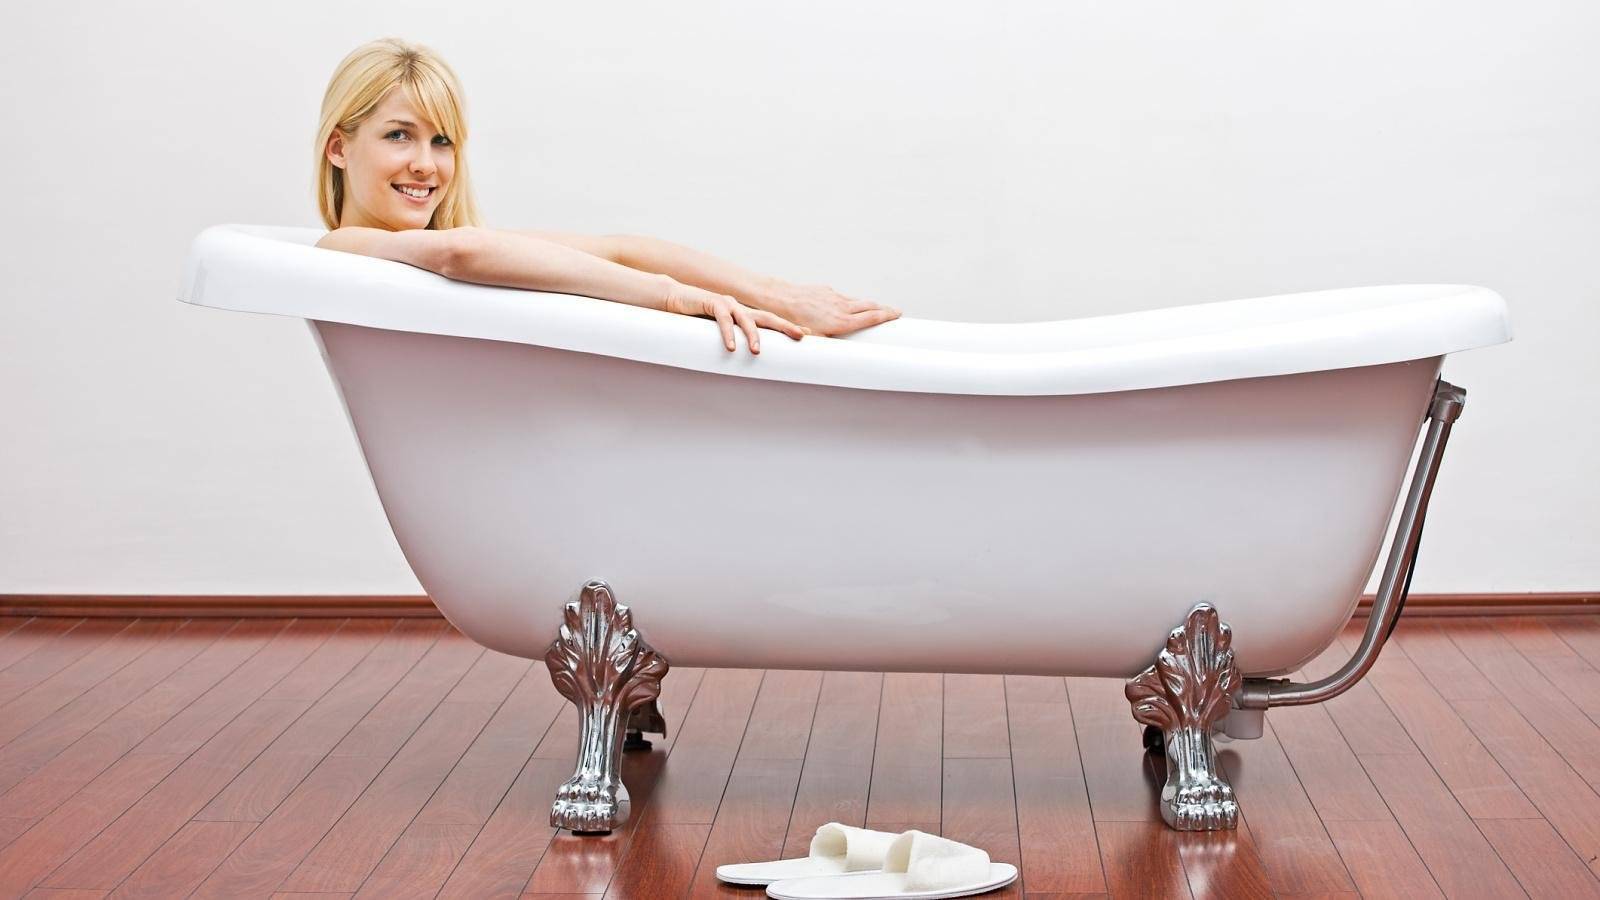 Какую выбрать акриловую ванну и на что обращать внимание при выборе в первую очередь